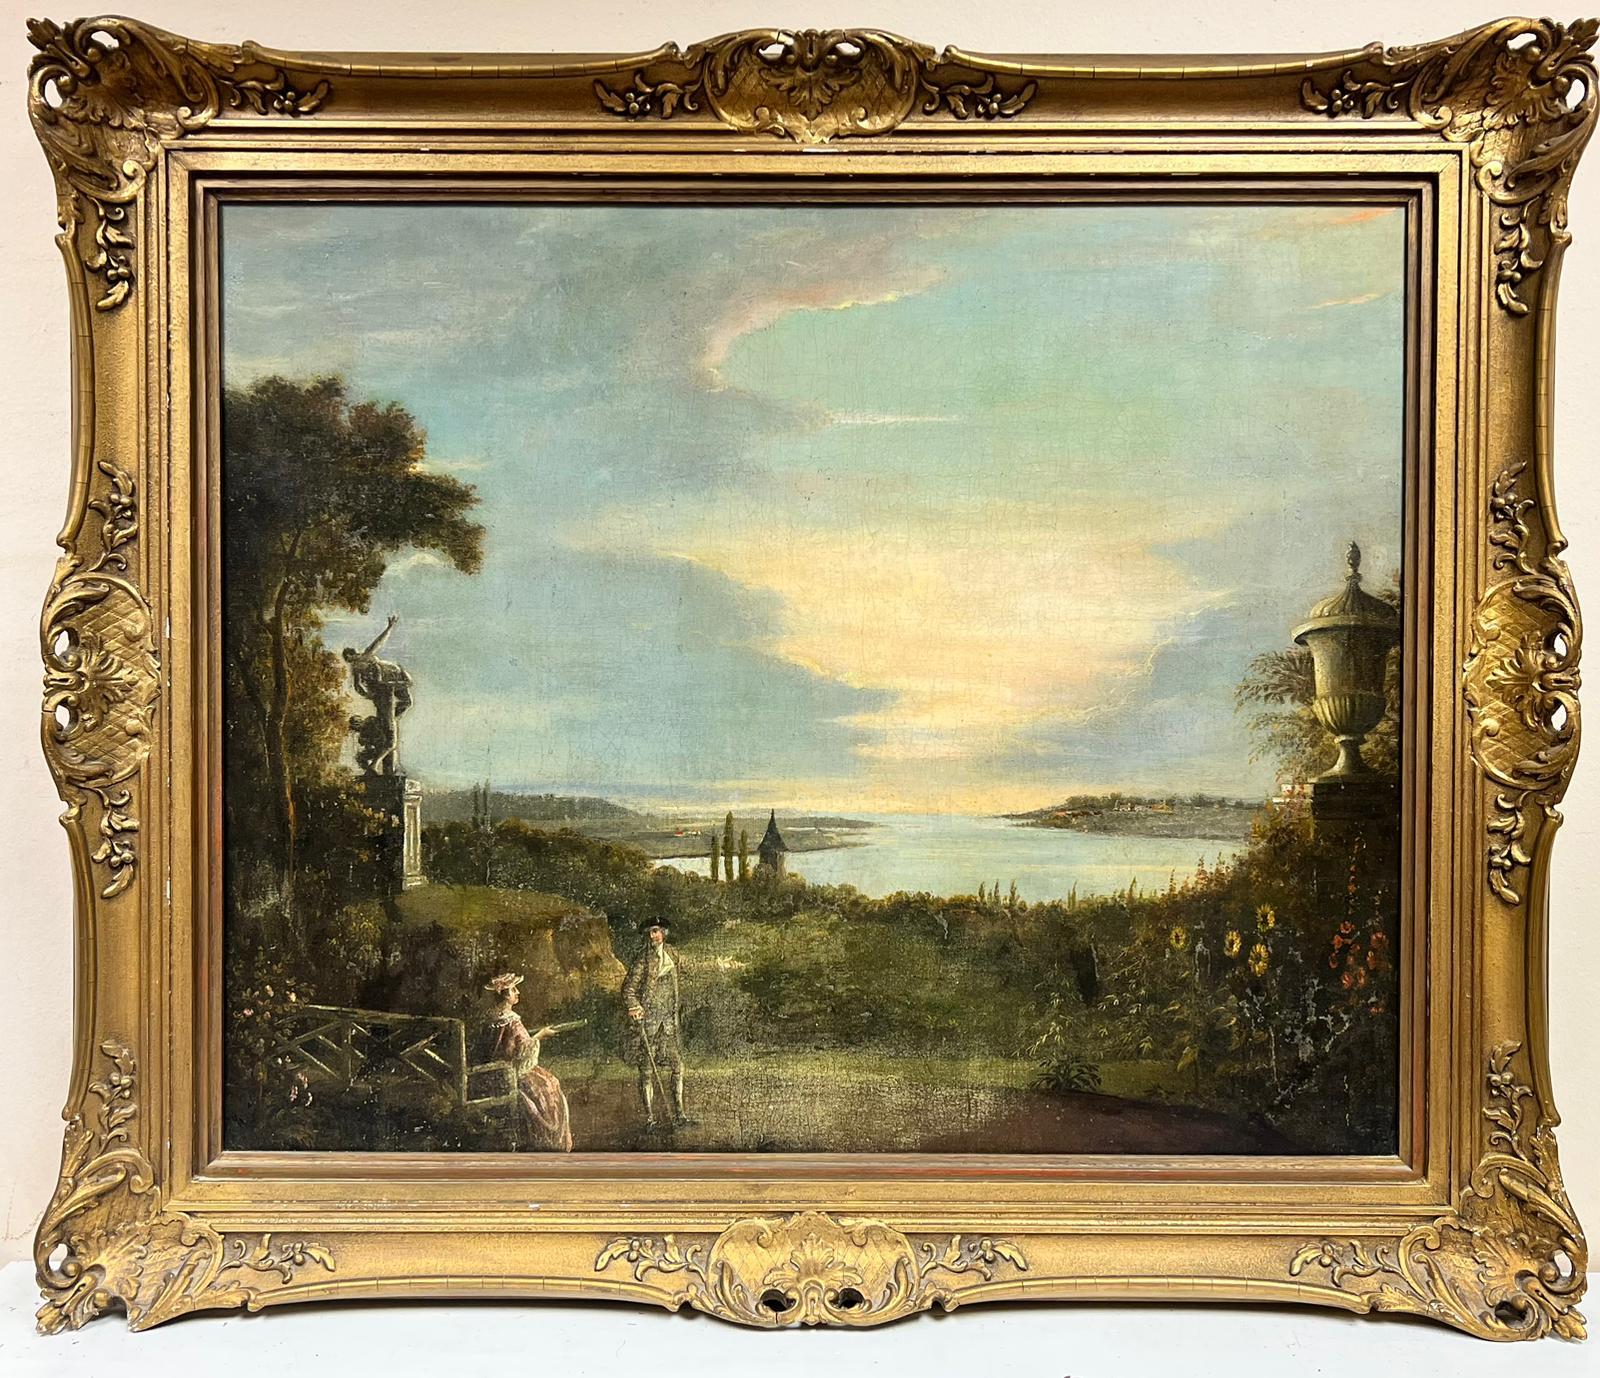 Klassische italienische Landschafts- und Gartenornamente und Figuren aus dem 18. Jahrhundert – Painting von Coplestone Warre Bampfylde